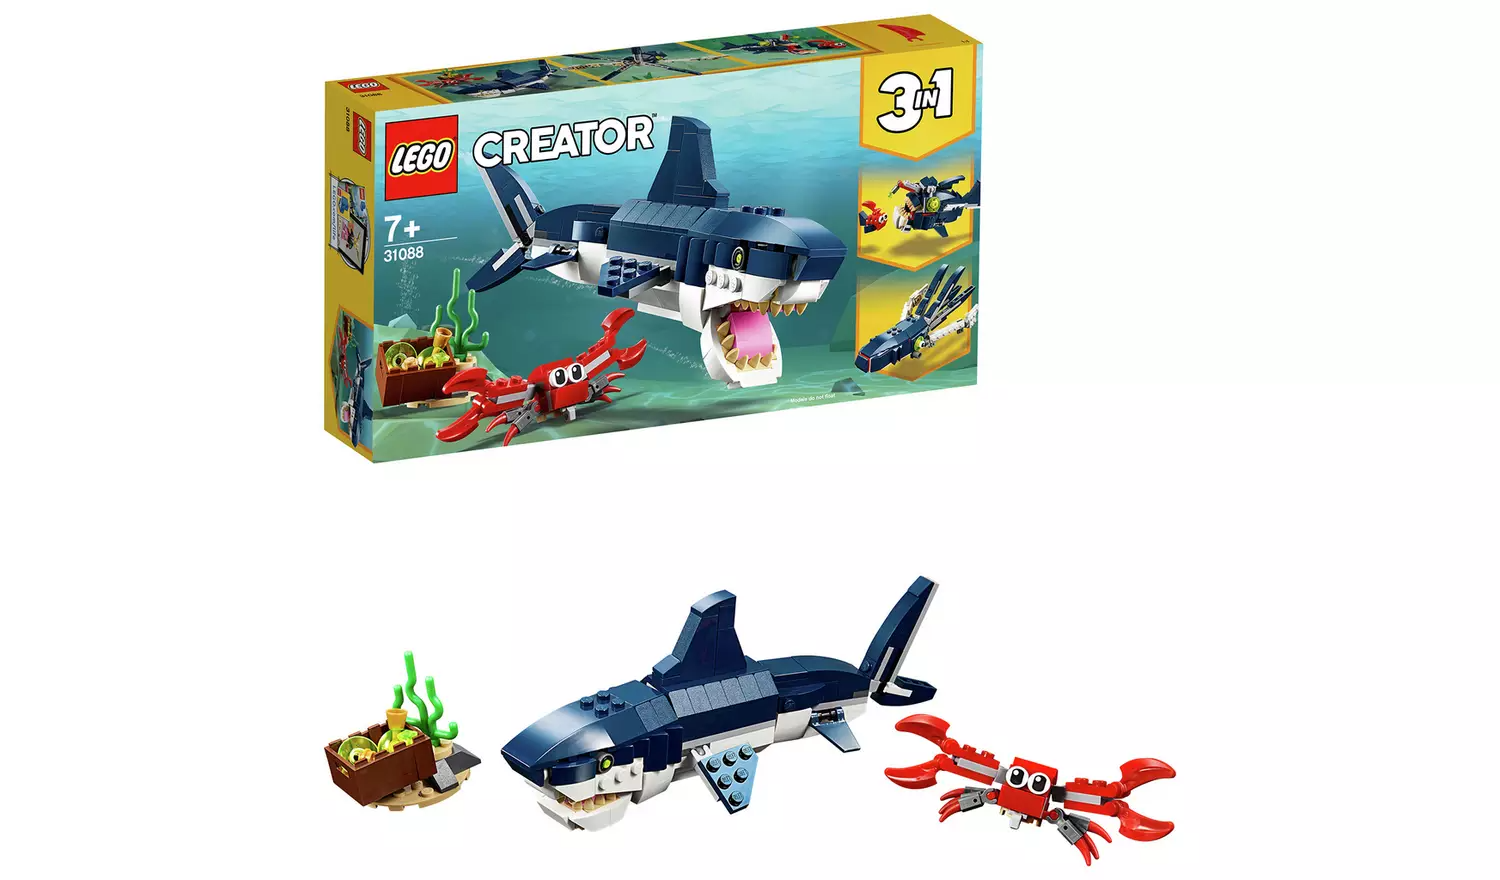 LEGO Creator Deep Sea Creatures Toy Shark Playset – 31088